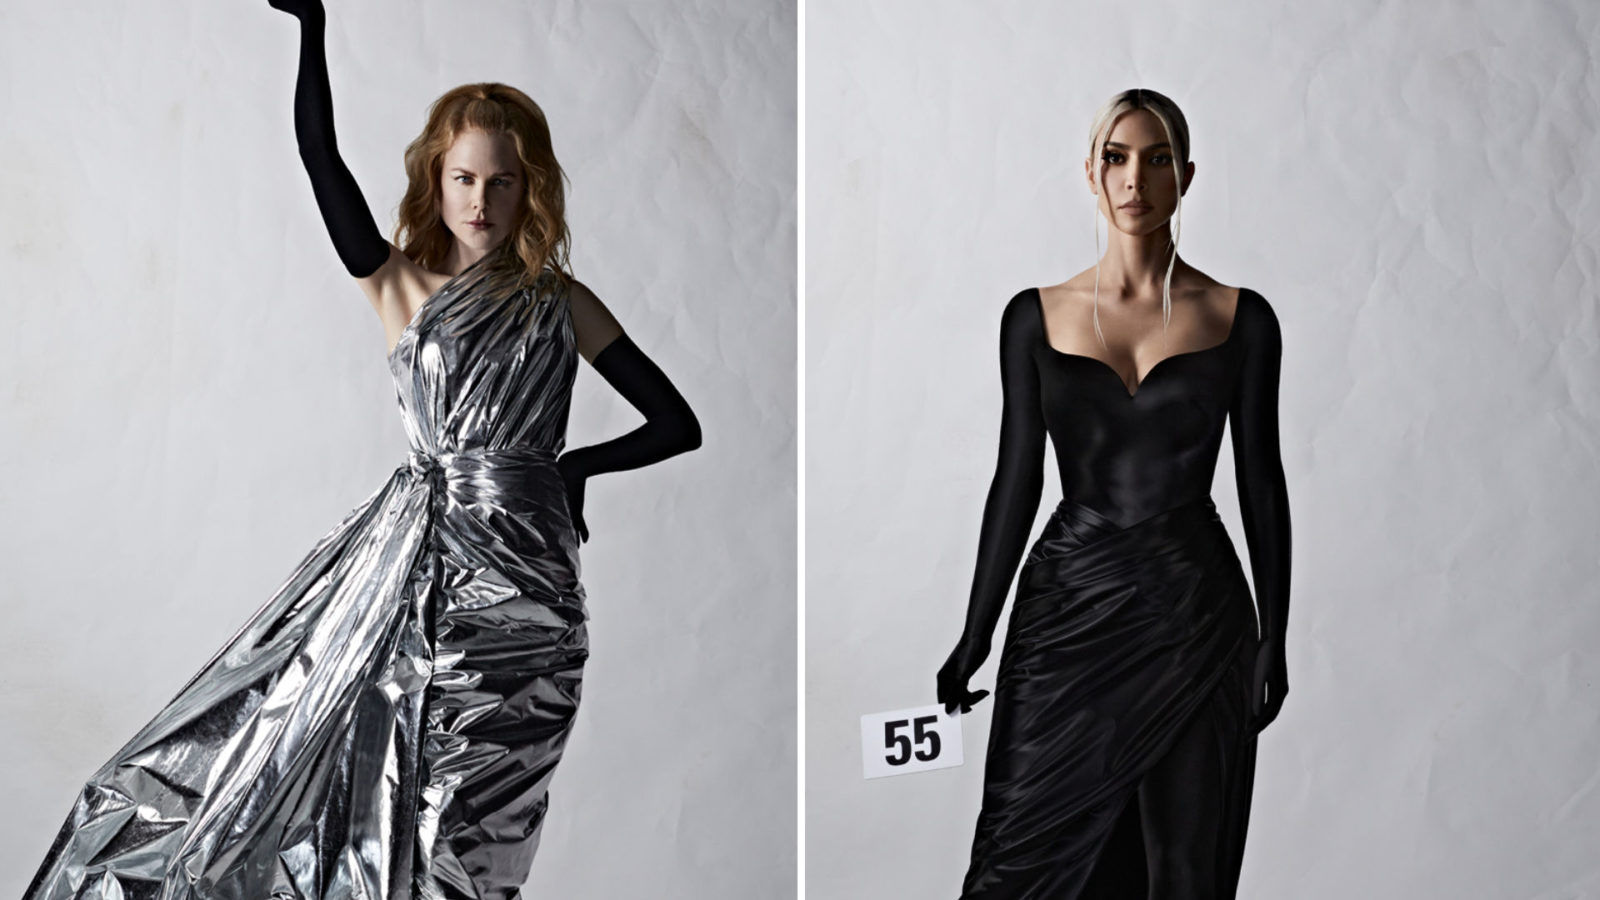 Nicole Kidman, Kim Kardashian turn into runway models for Balenciaga